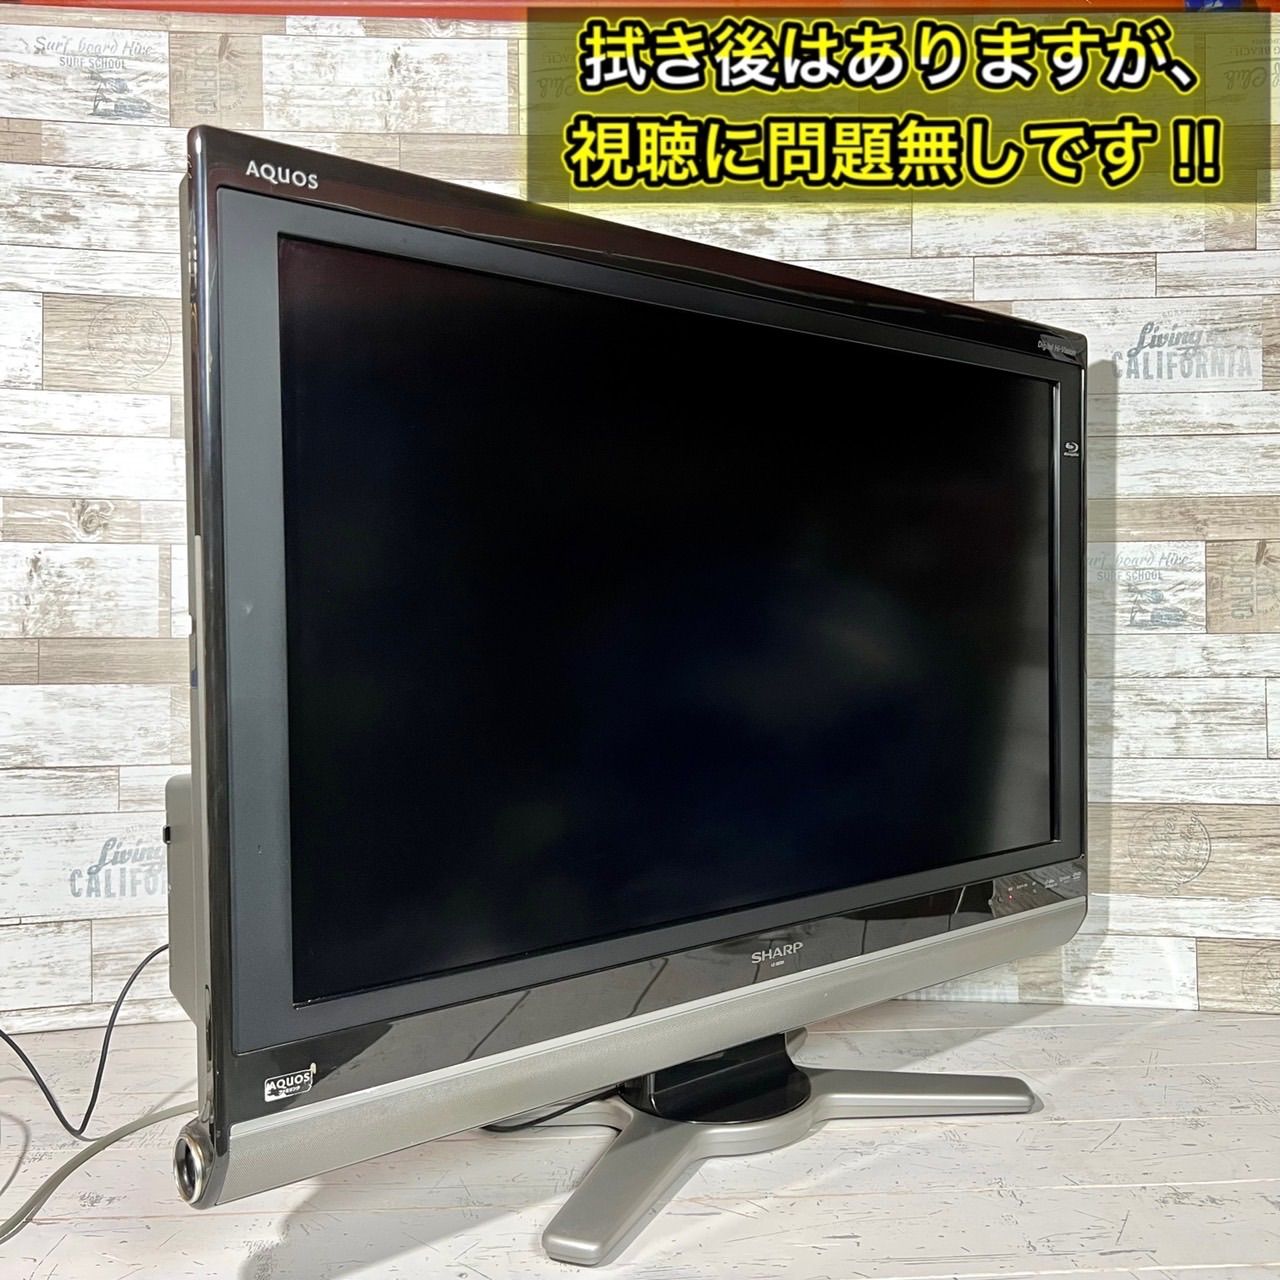 シャープアクオス32型ホワイトLC32P1 - テレビ